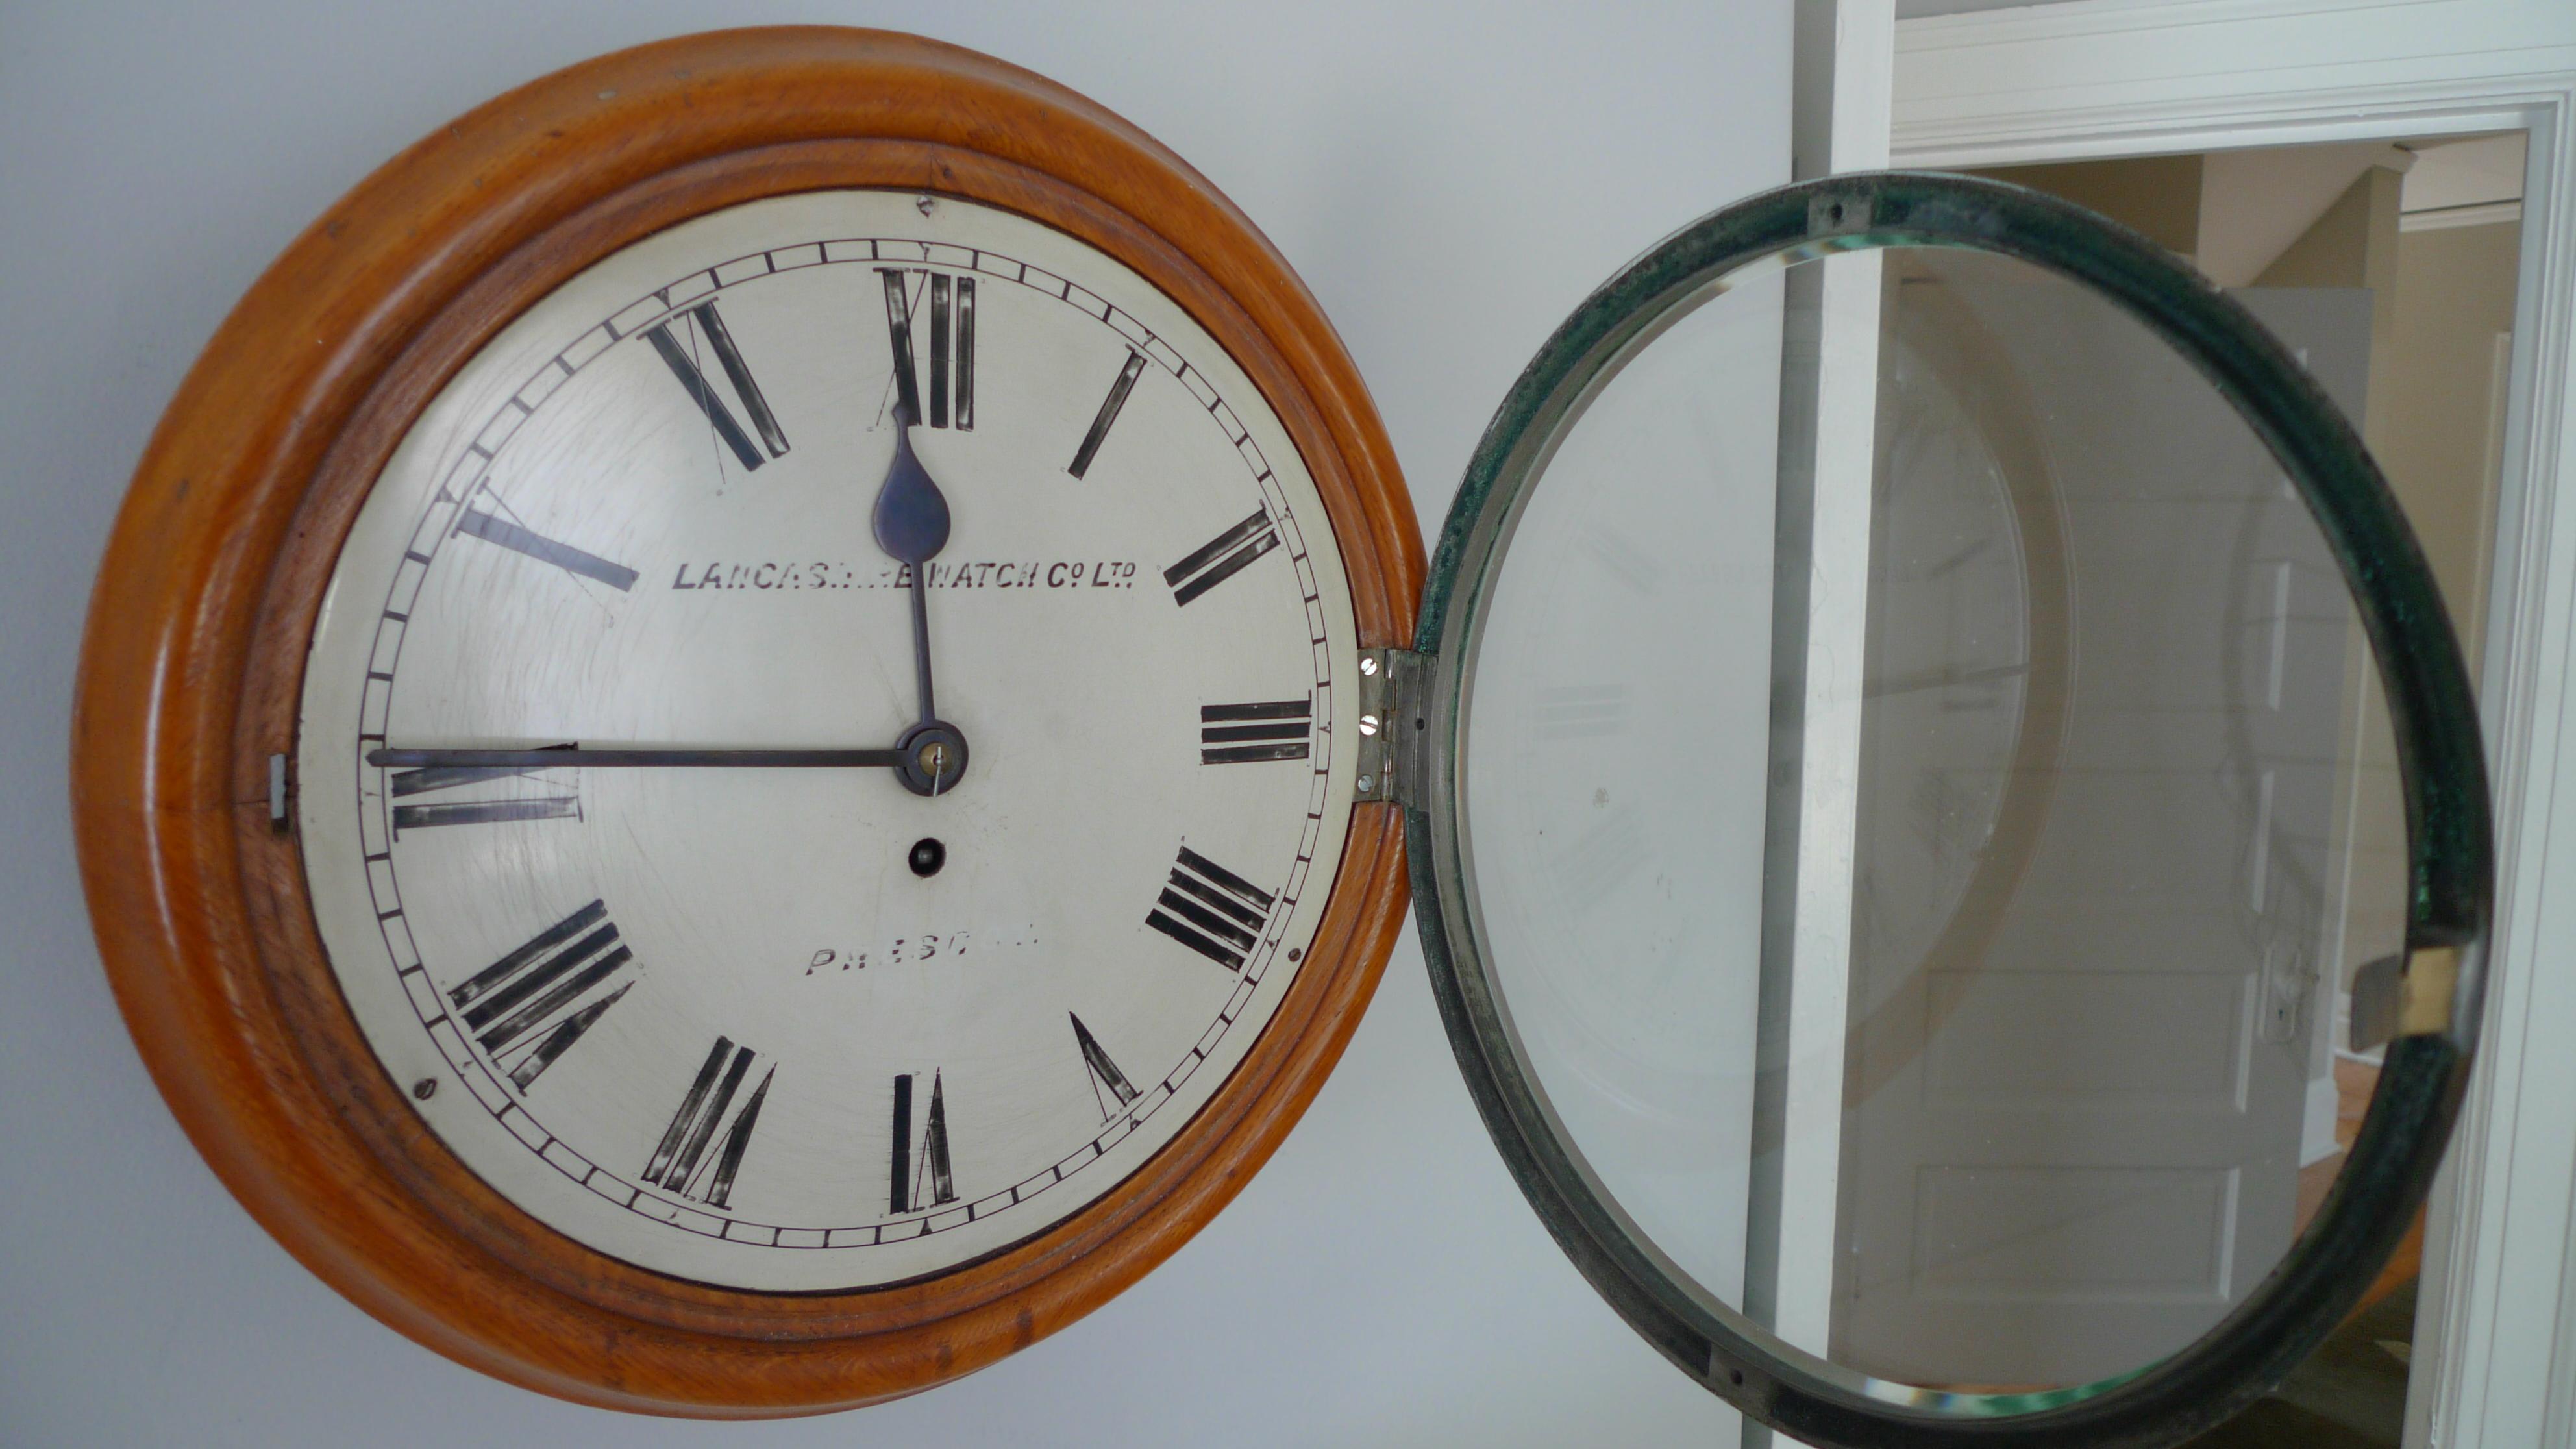 Victorien Horloge murale de Lancashire Watch Co. provenant d'une gare, fin du 19e siècle. Livraison gratuite en vente